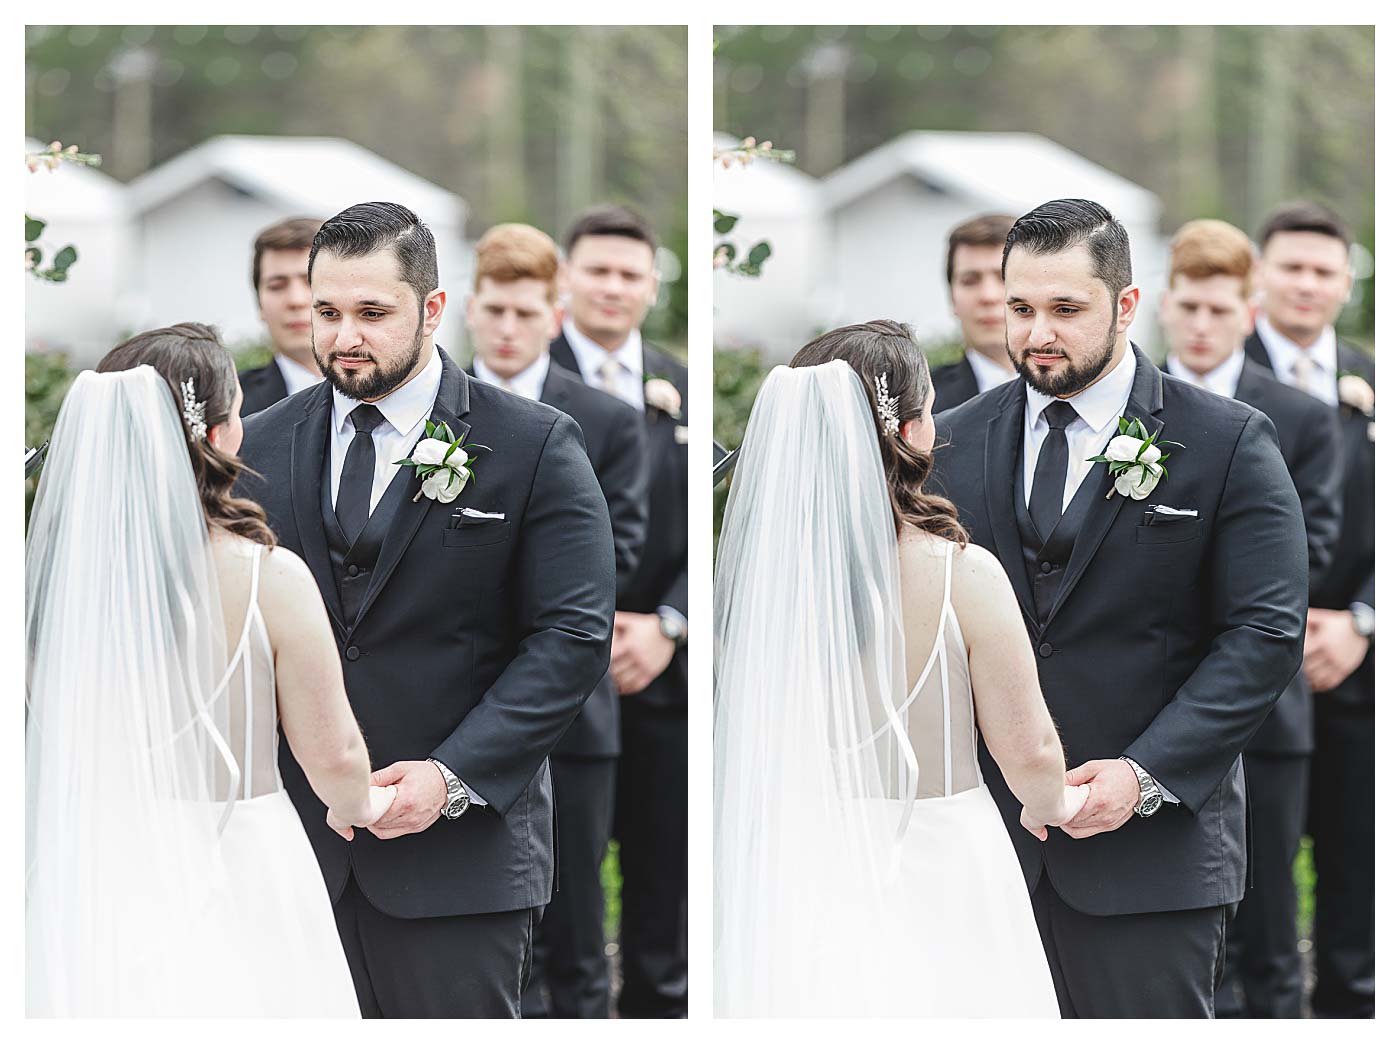 groom looking at bride